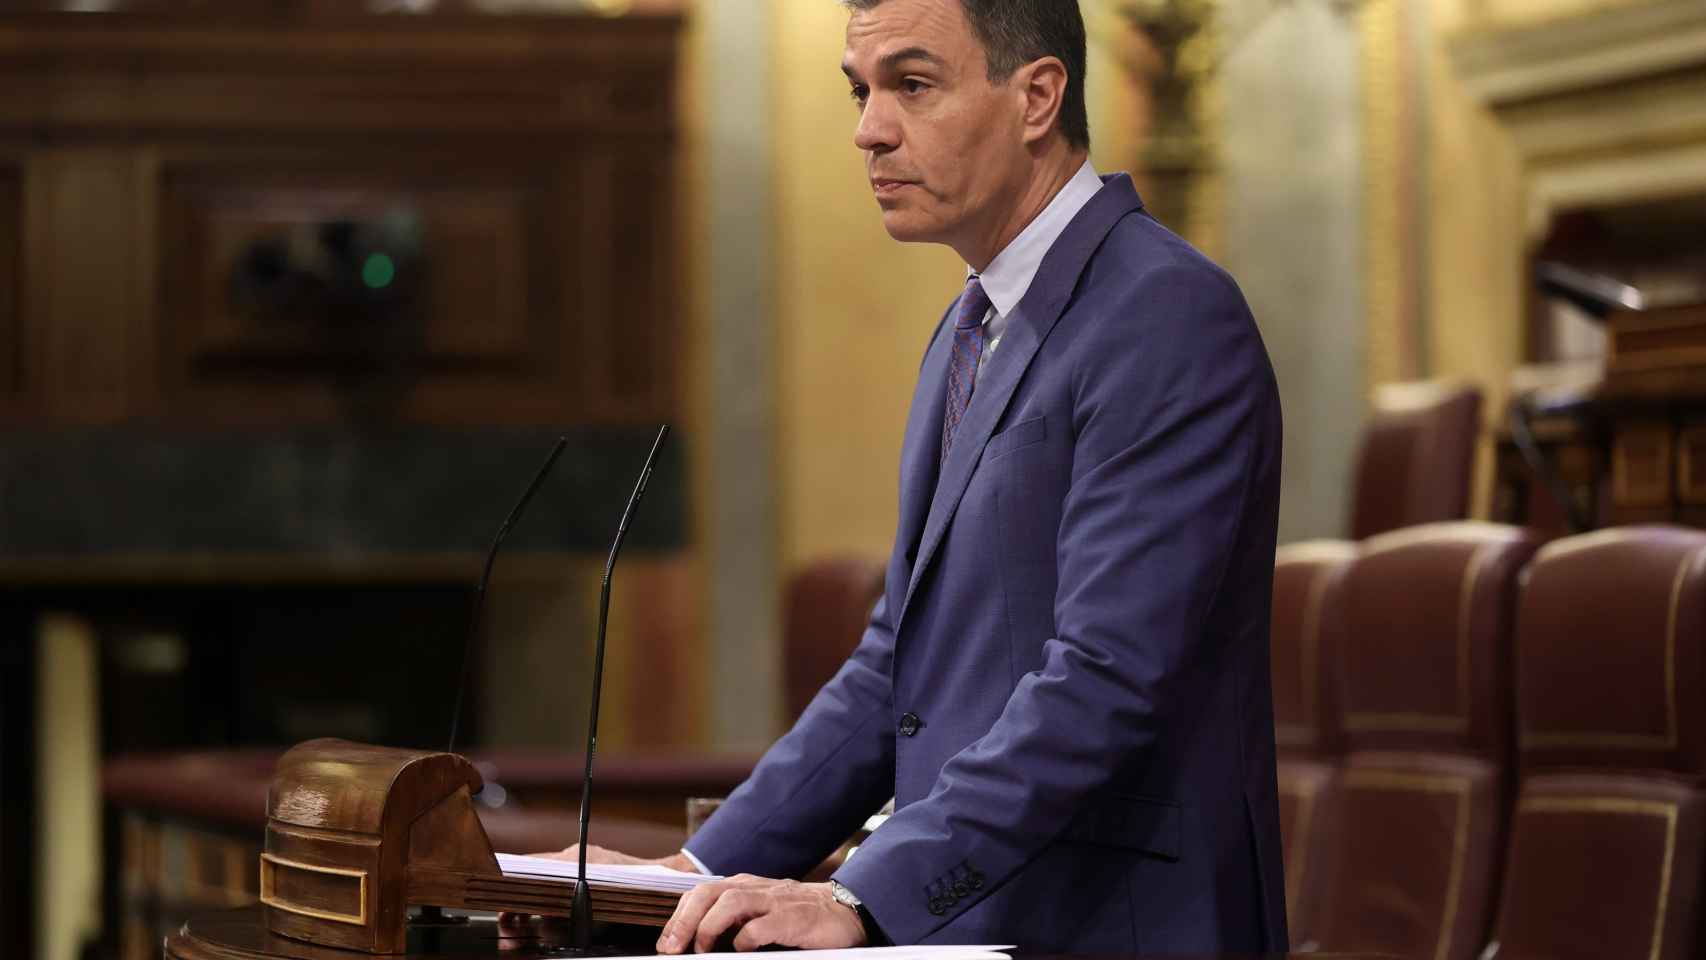 El presidente del Gobierno, Pedro Sánchez, interviene durante una sesión plenaria, en el Congreso de los Diputados, a 8 de junio de 2022